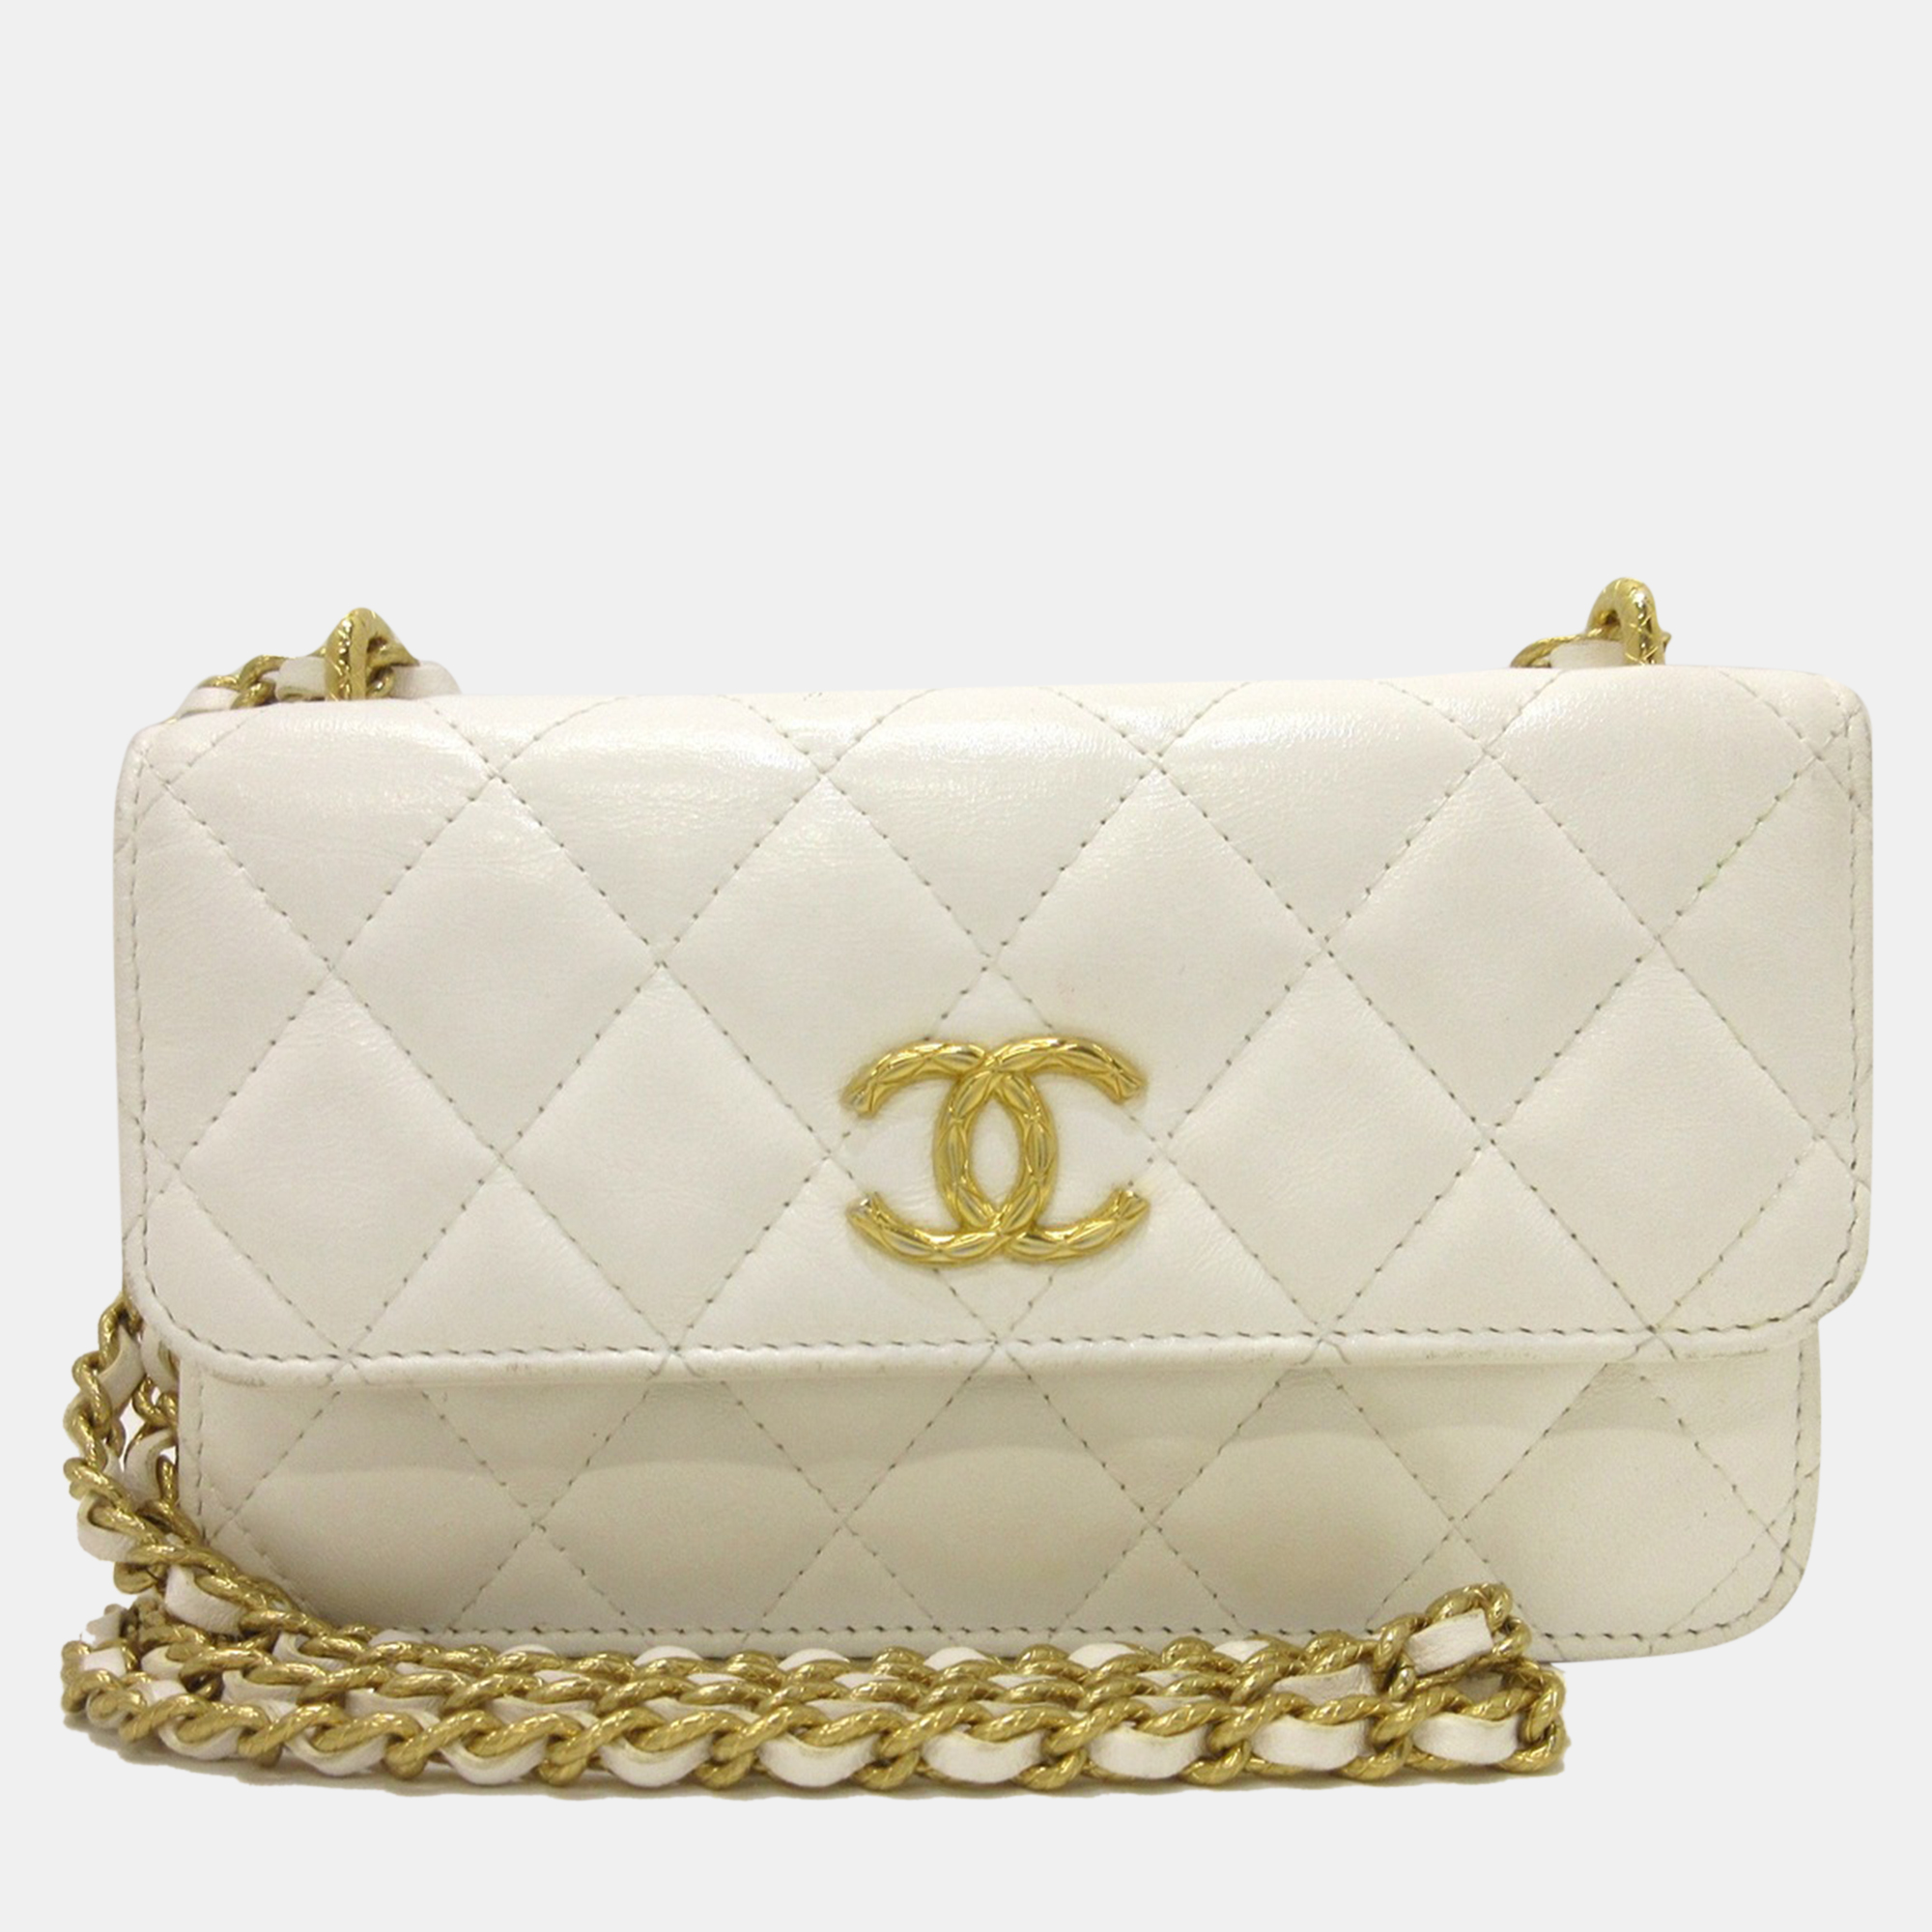 Chanel White Leather Shoulder Bag